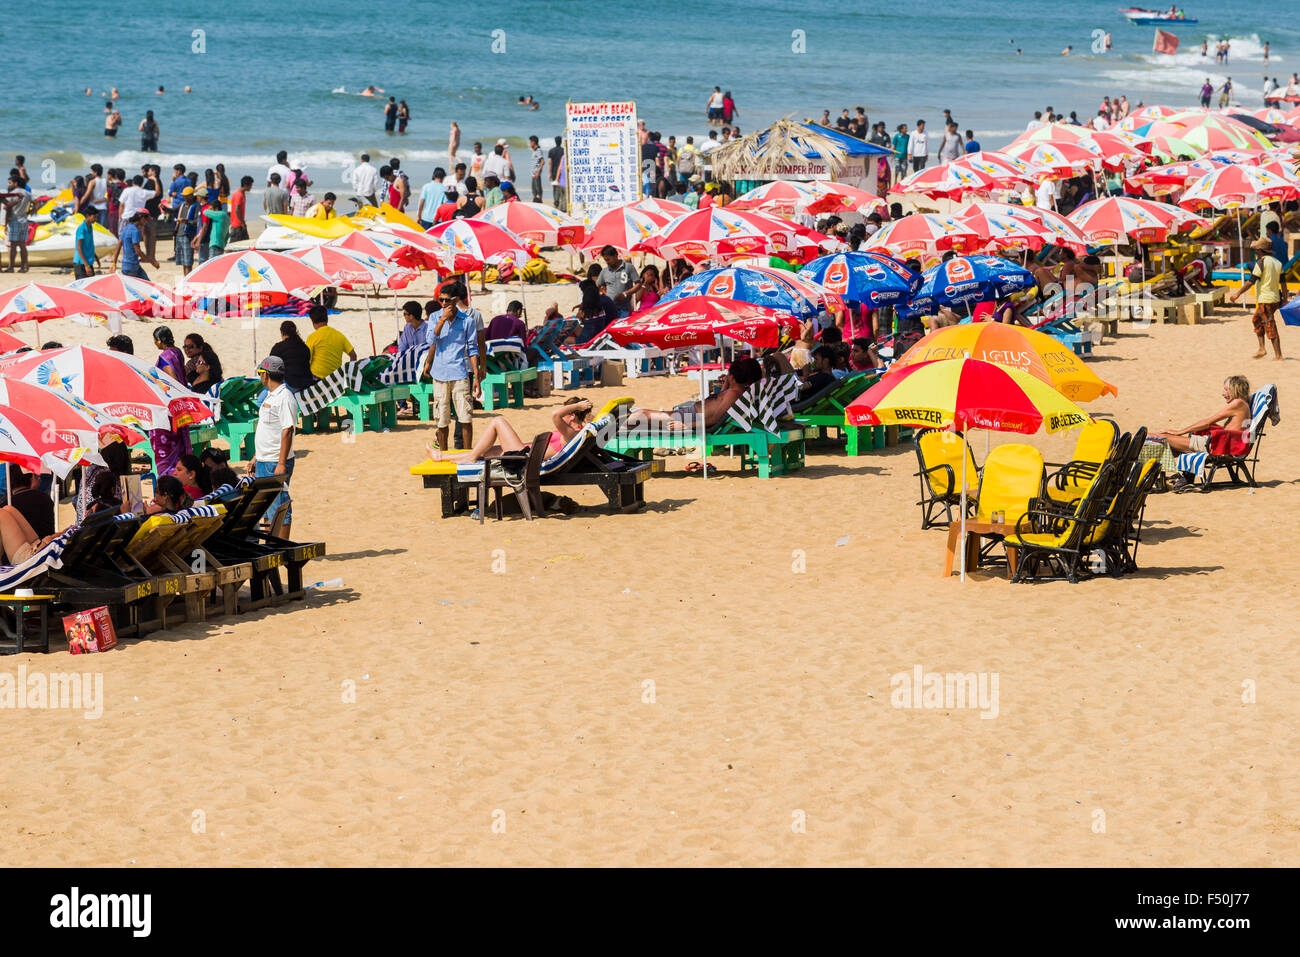 La plage de Calangute avec parasols, sable blanc et bleu de la mer est l'une des célèbres plages de l'ancienne colonie portugaise de Goa Banque D'Images